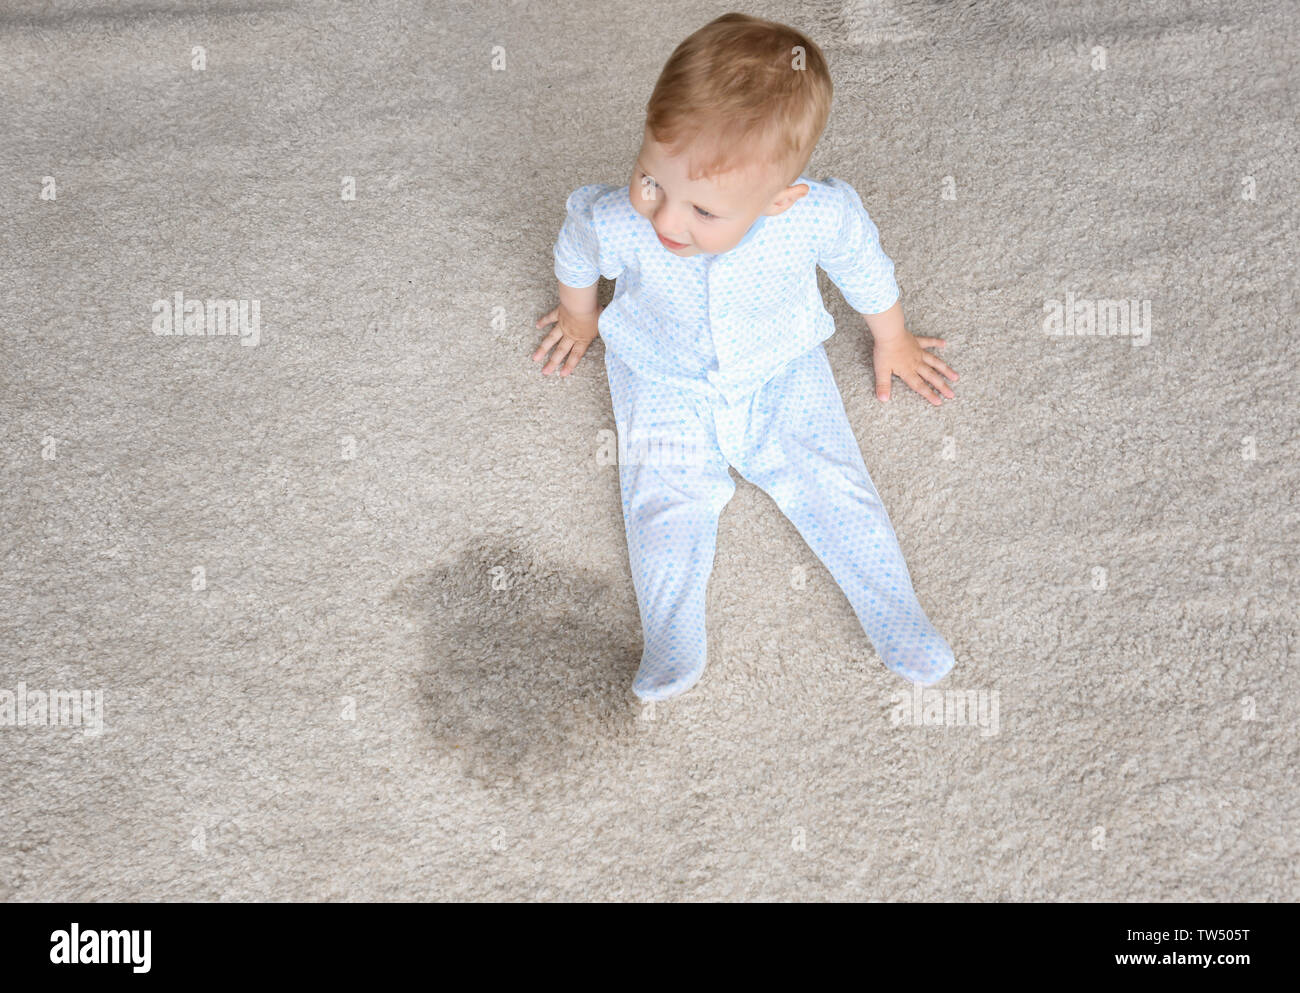 Cute Baby Junge Sitzt Auf Dem Teppich In Der Nahe Von Nassen Punkt Stockfotografie Alamy